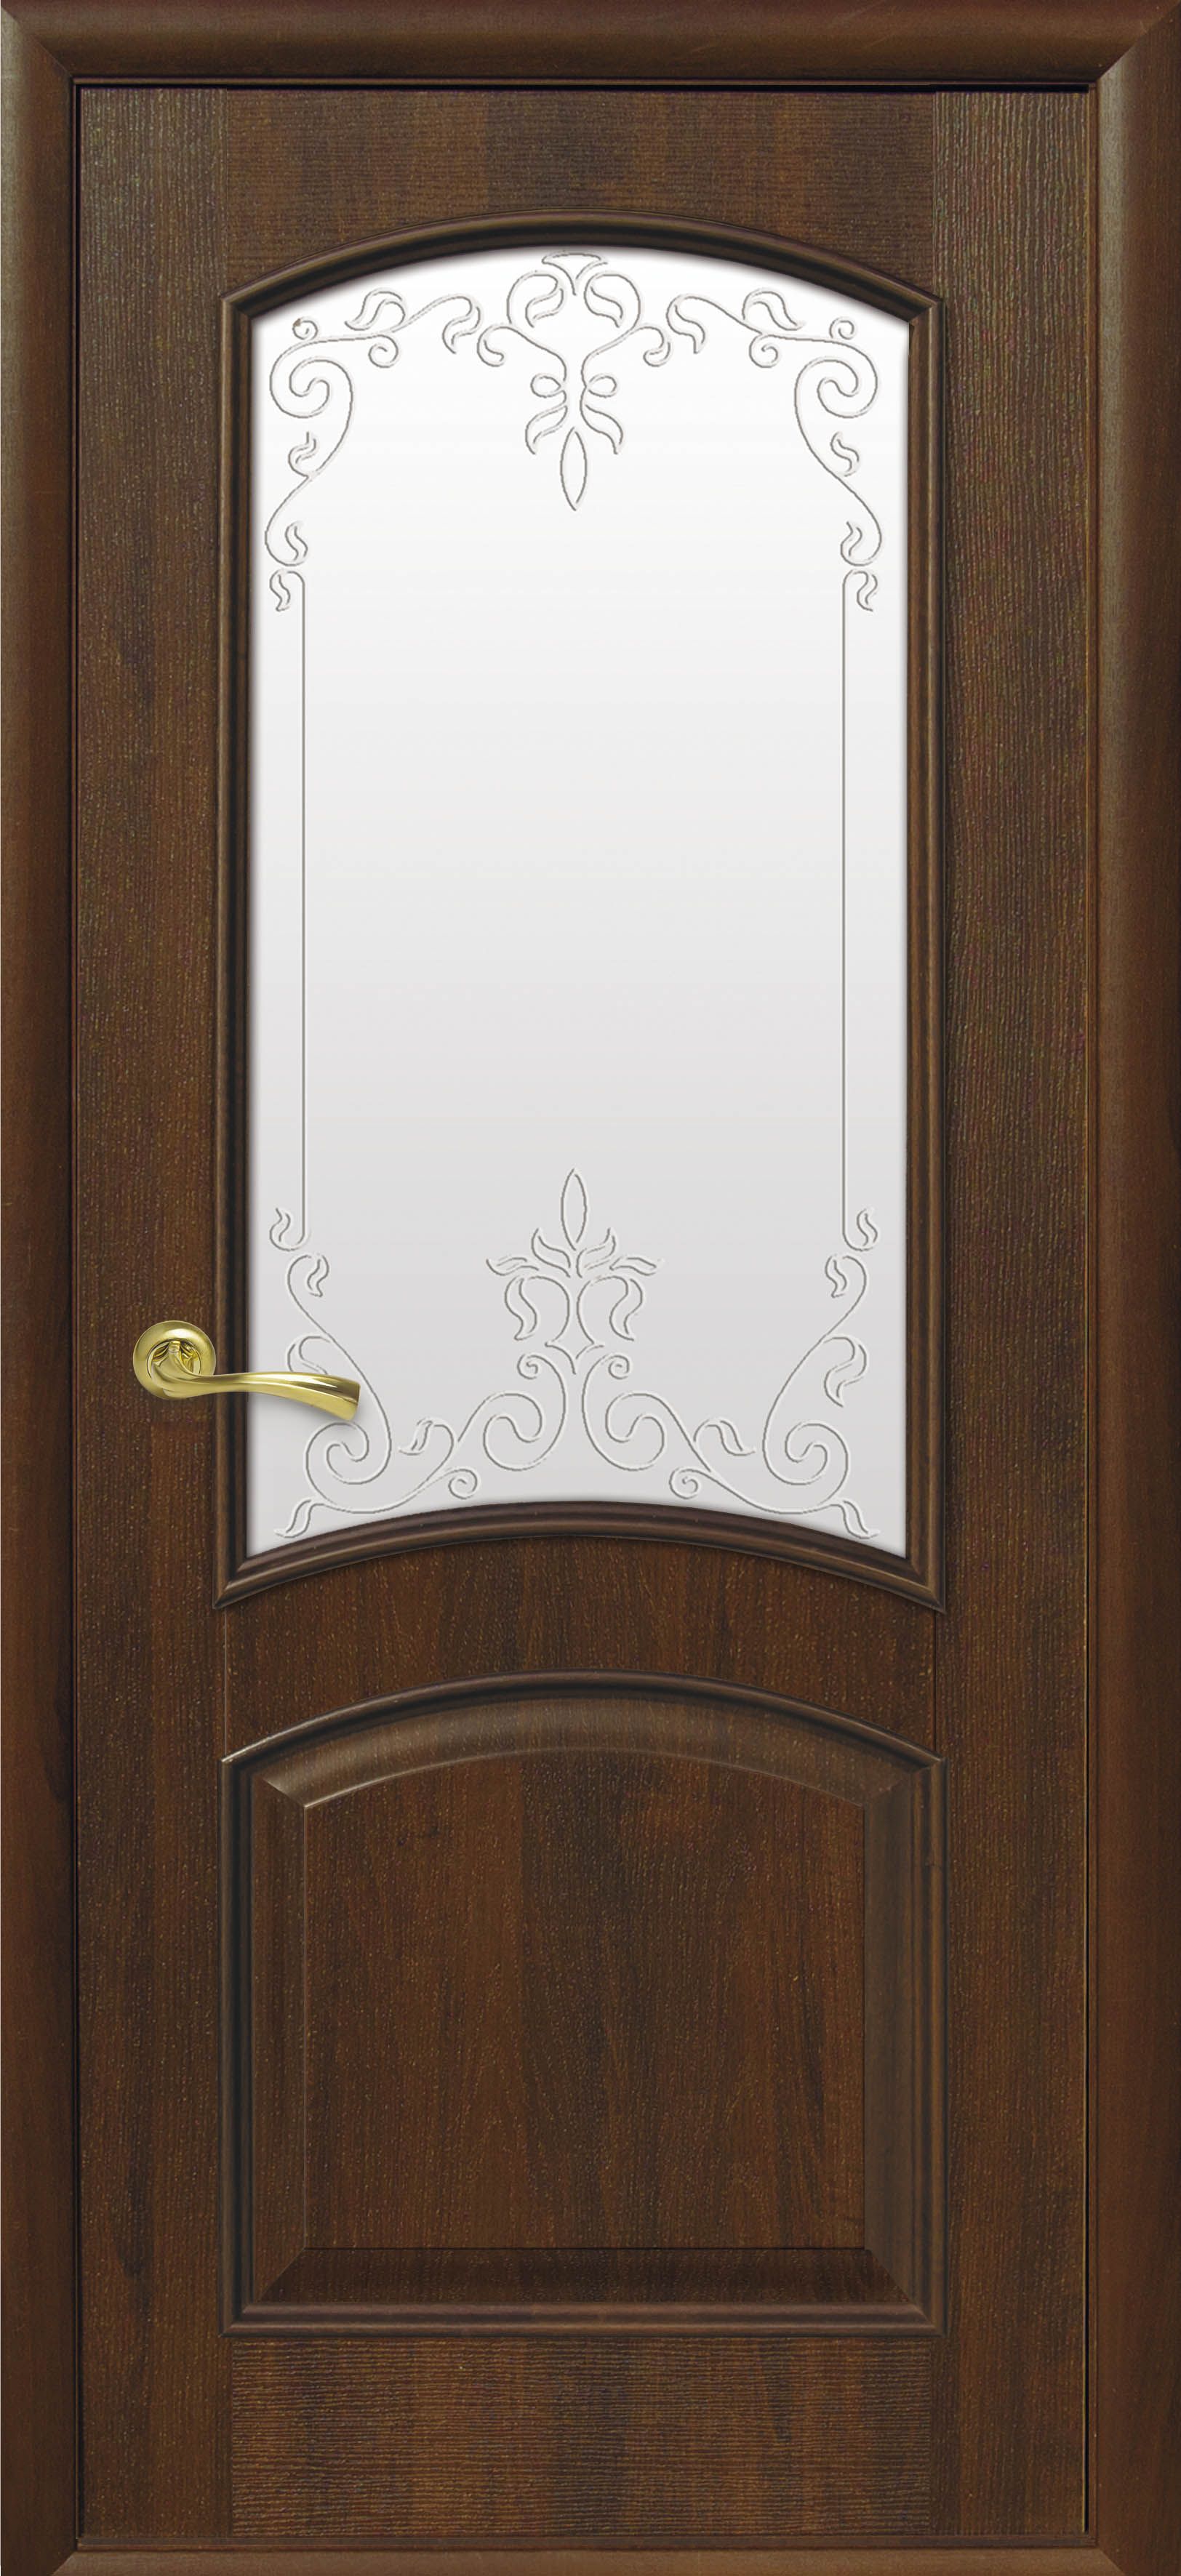 Межкомнатные двери Антре со стеклом сатин и рисунком Р2